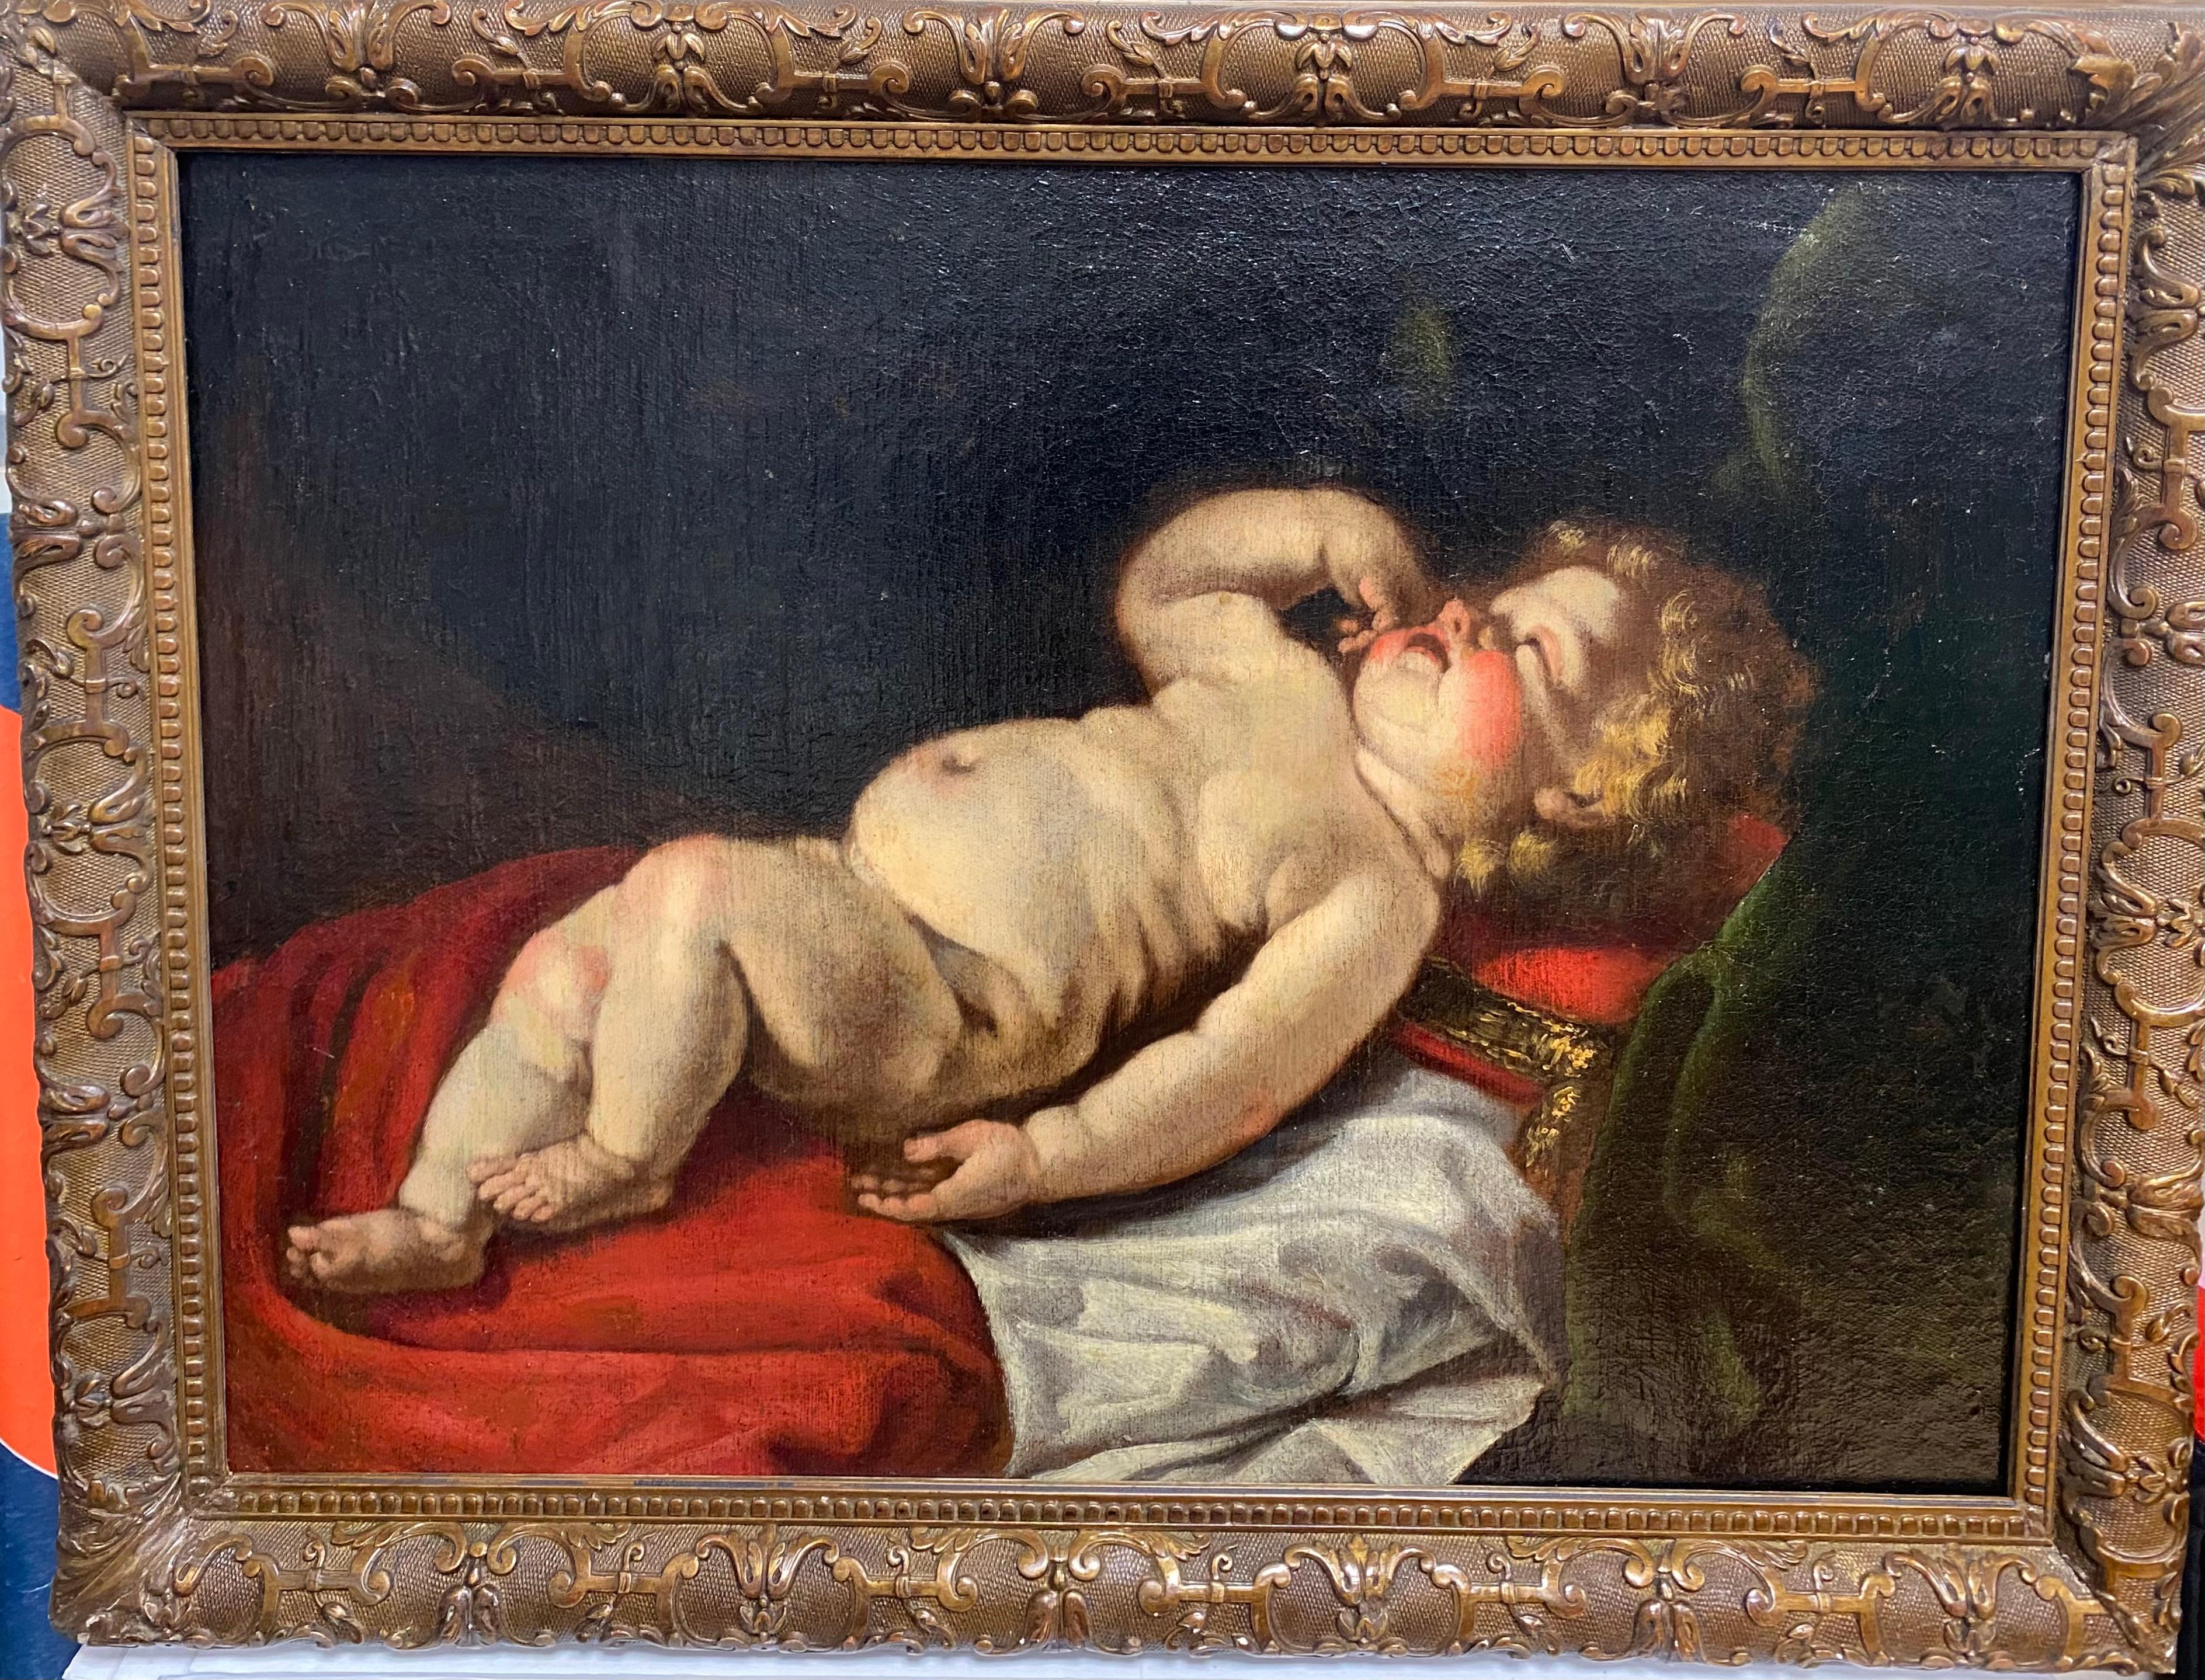 Paint Luigi Miradori circa 1600 - circa 1657 